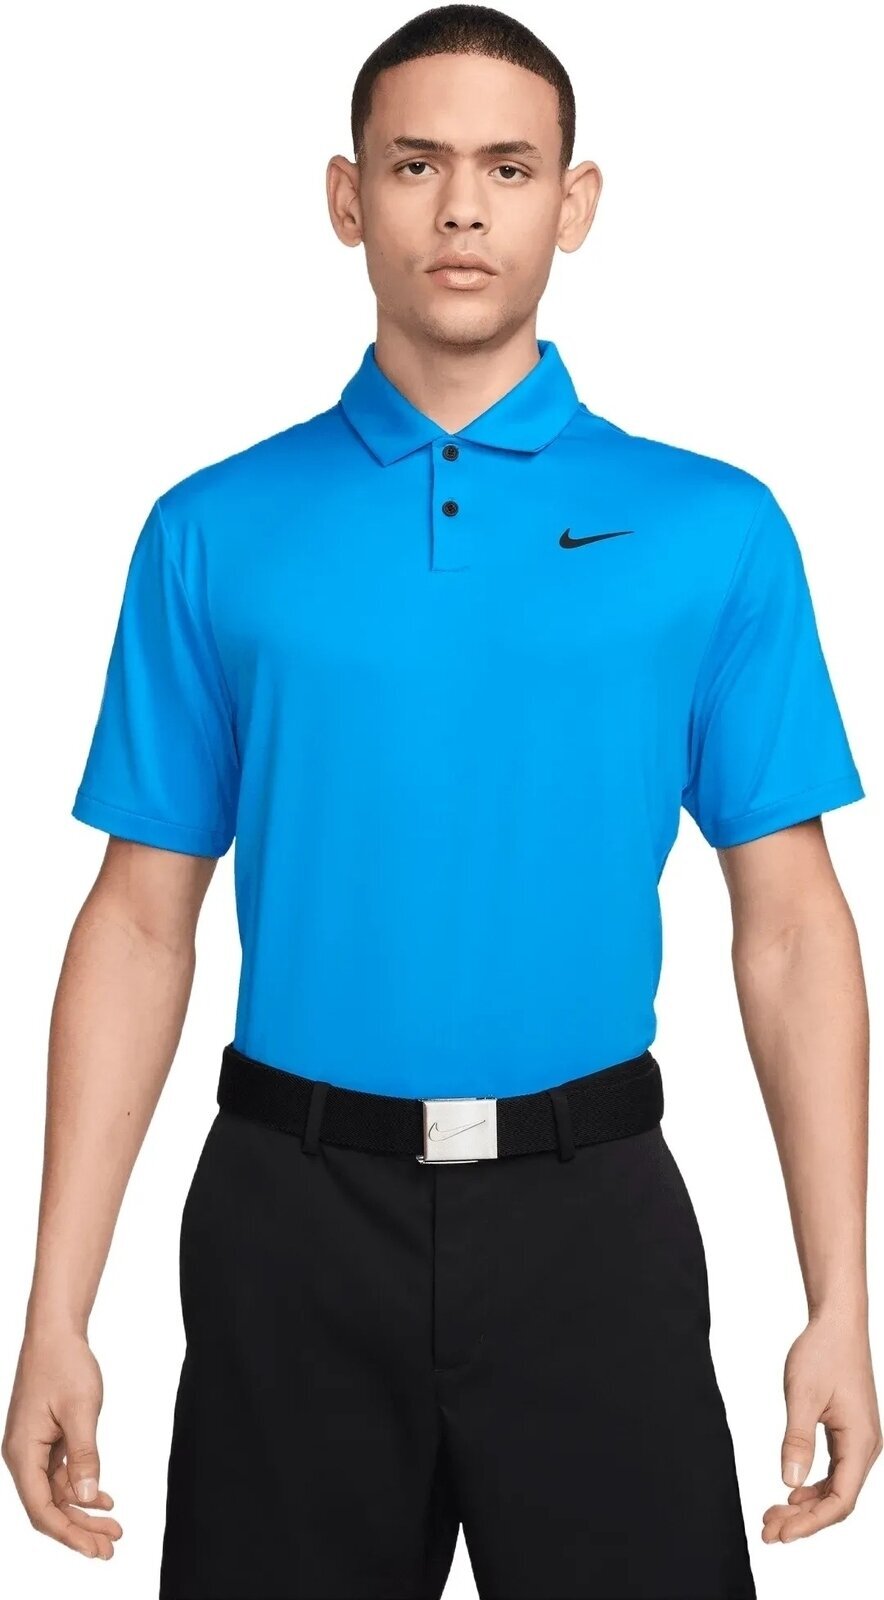 Polo-Shirt Nike Dri-Fit Tour Solid Mens Polo Light Photo Blue/Black L